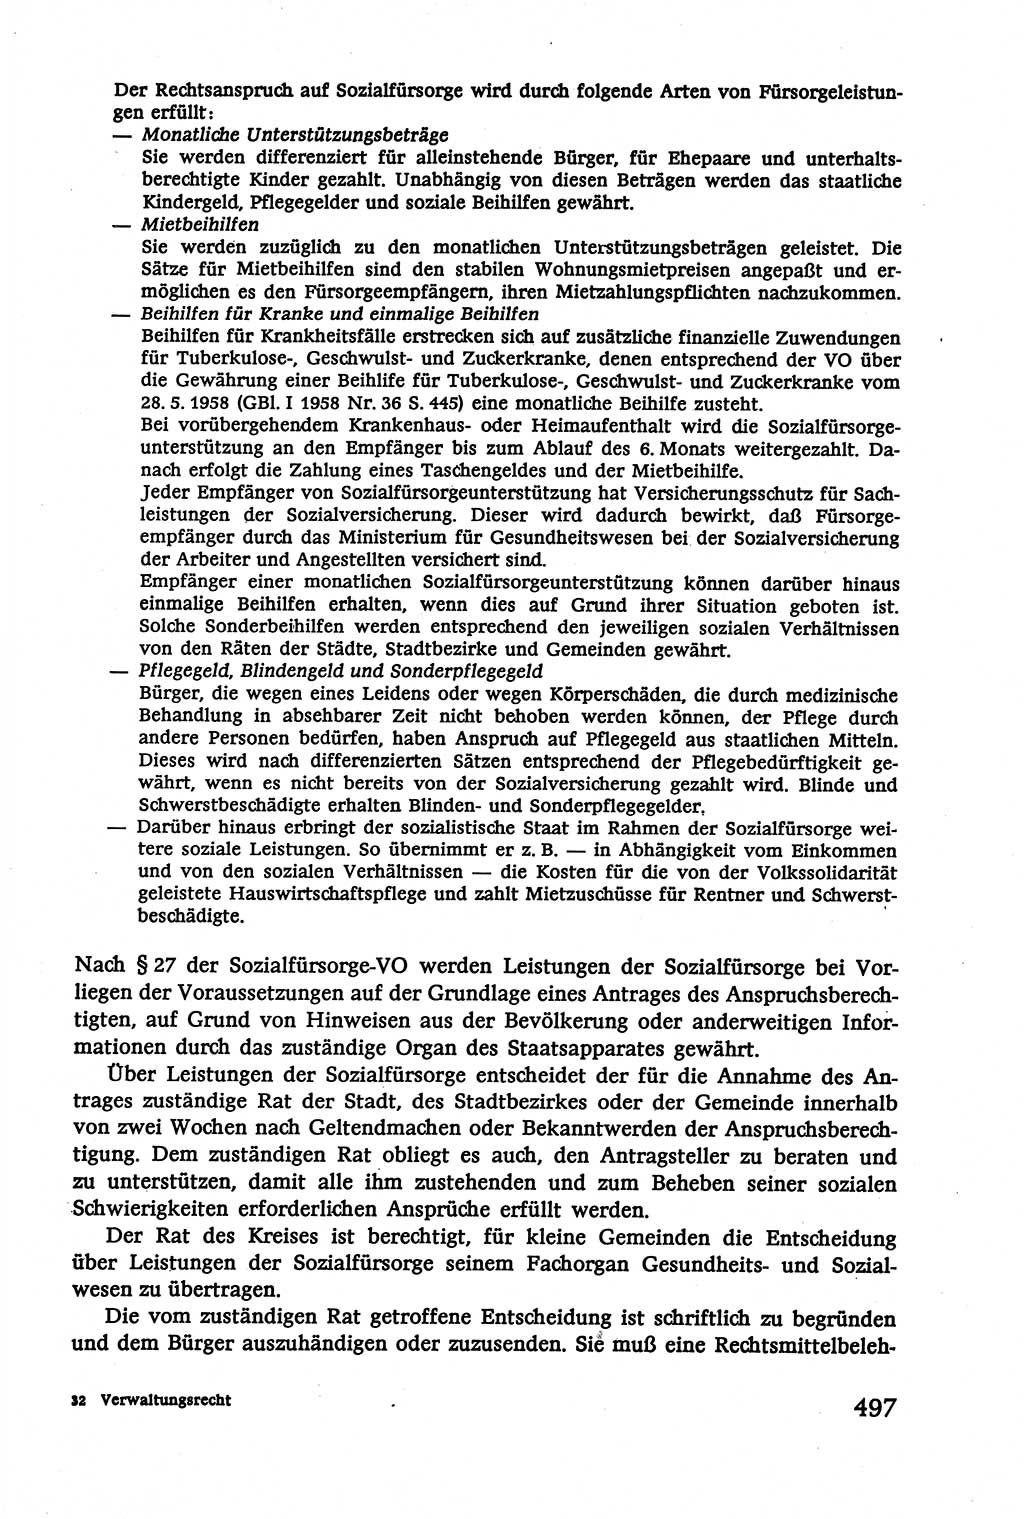 Verwaltungsrecht [Deutsche Demokratische Republik (DDR)], Lehrbuch 1979, Seite 497 (Verw.-R. DDR Lb. 1979, S. 497)